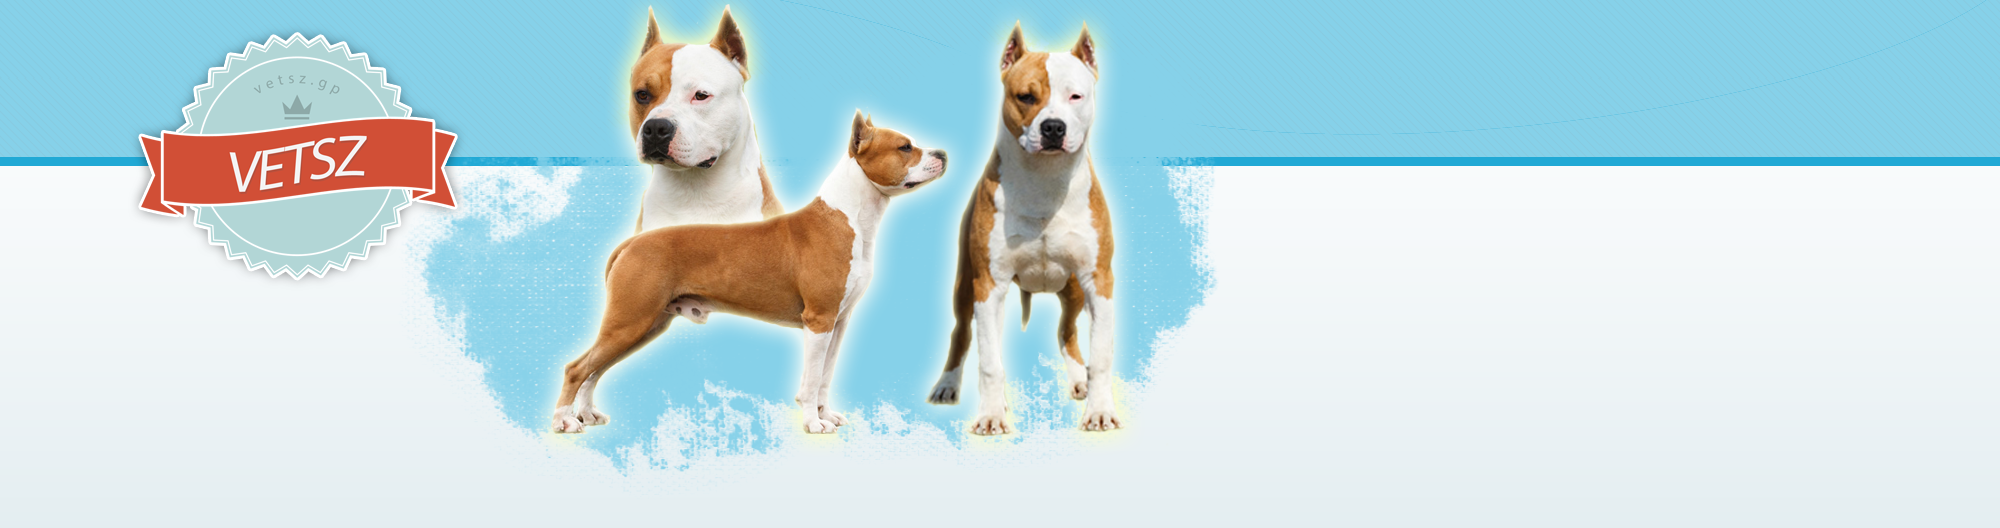 Virtulis EbTenysztk Szervezete ~ Virtual Dog Breeders Association